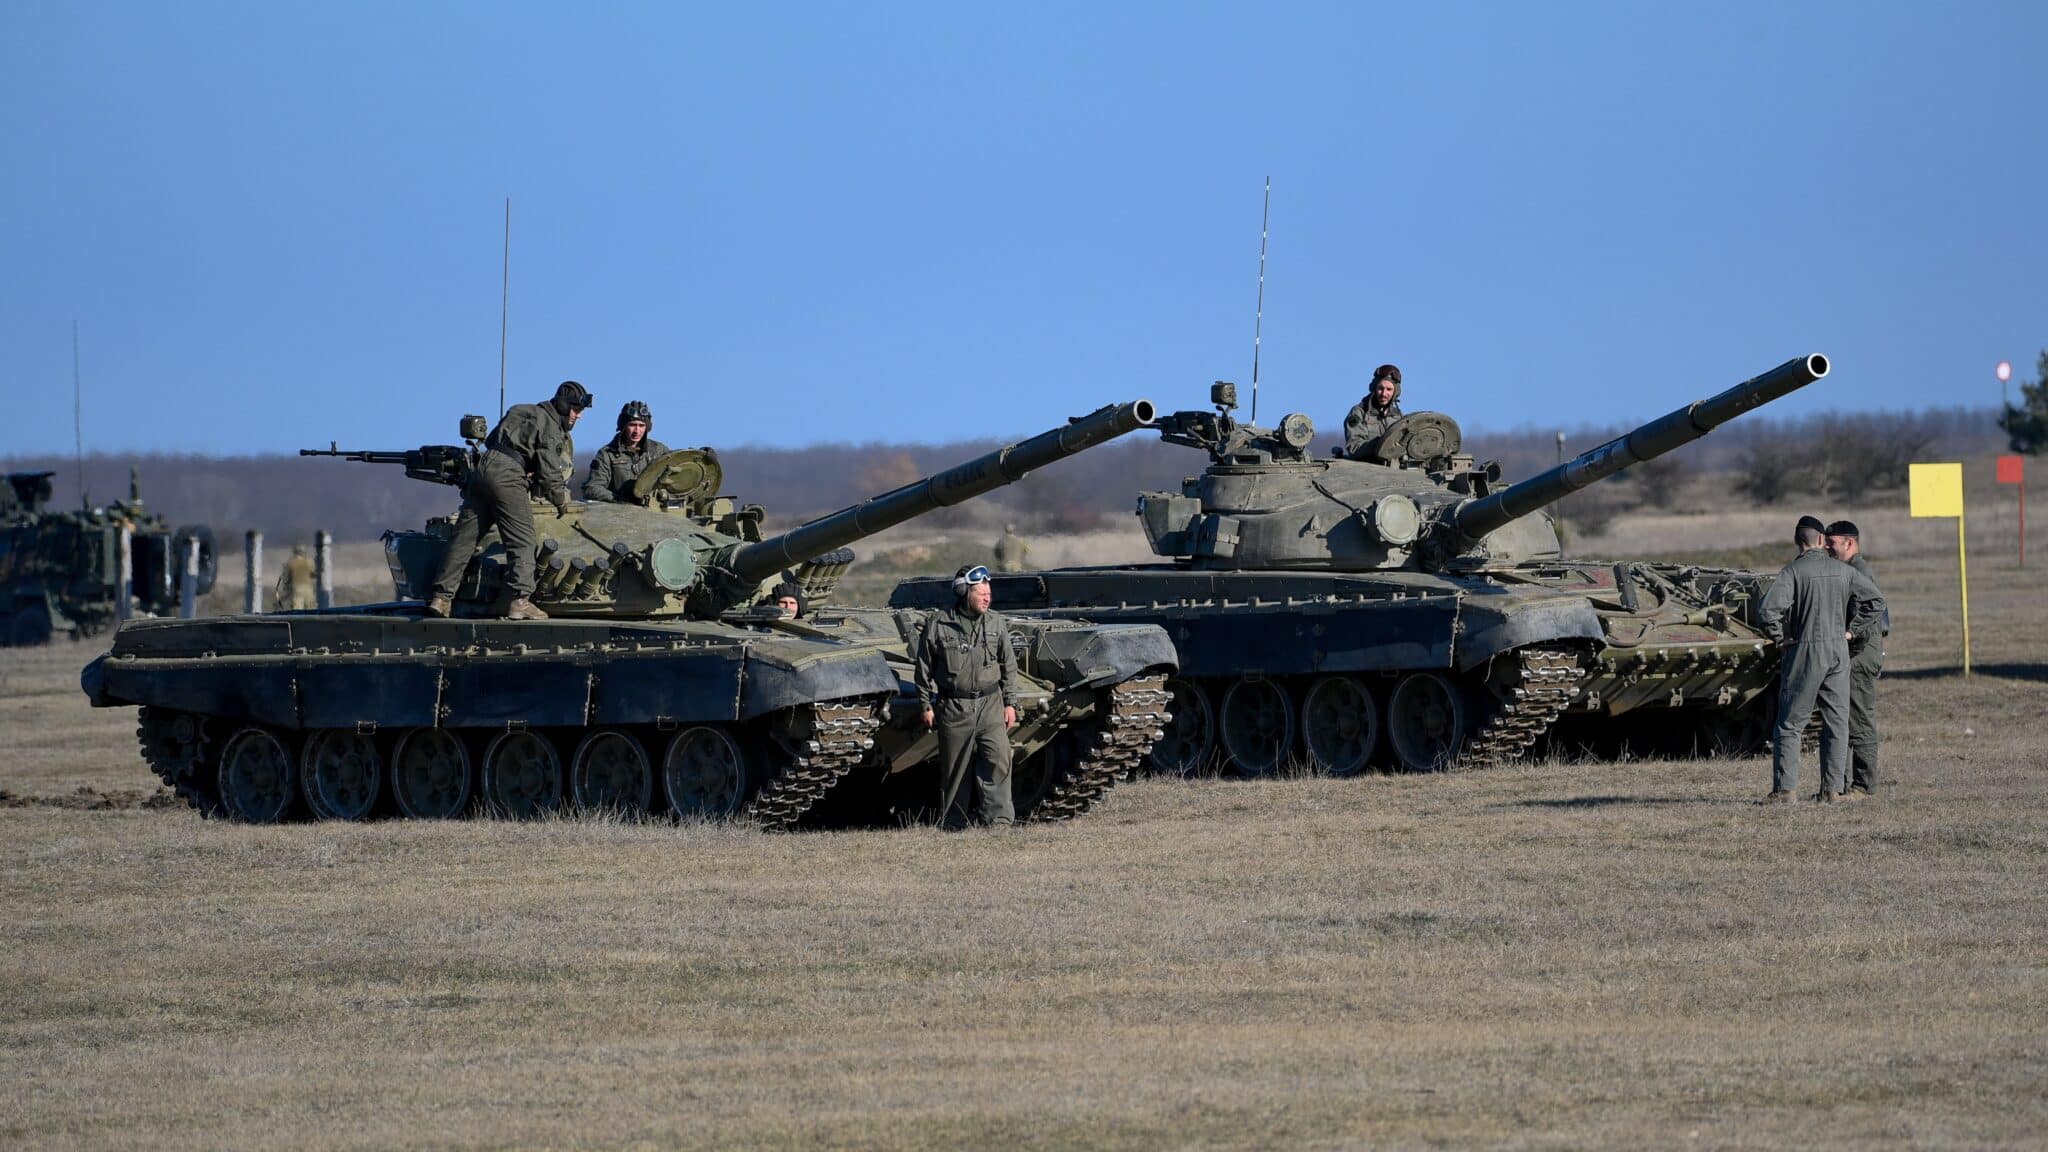 España descarta rotundamente el envío de tropas a Ucrania: "No está previsto de ninguna manera"